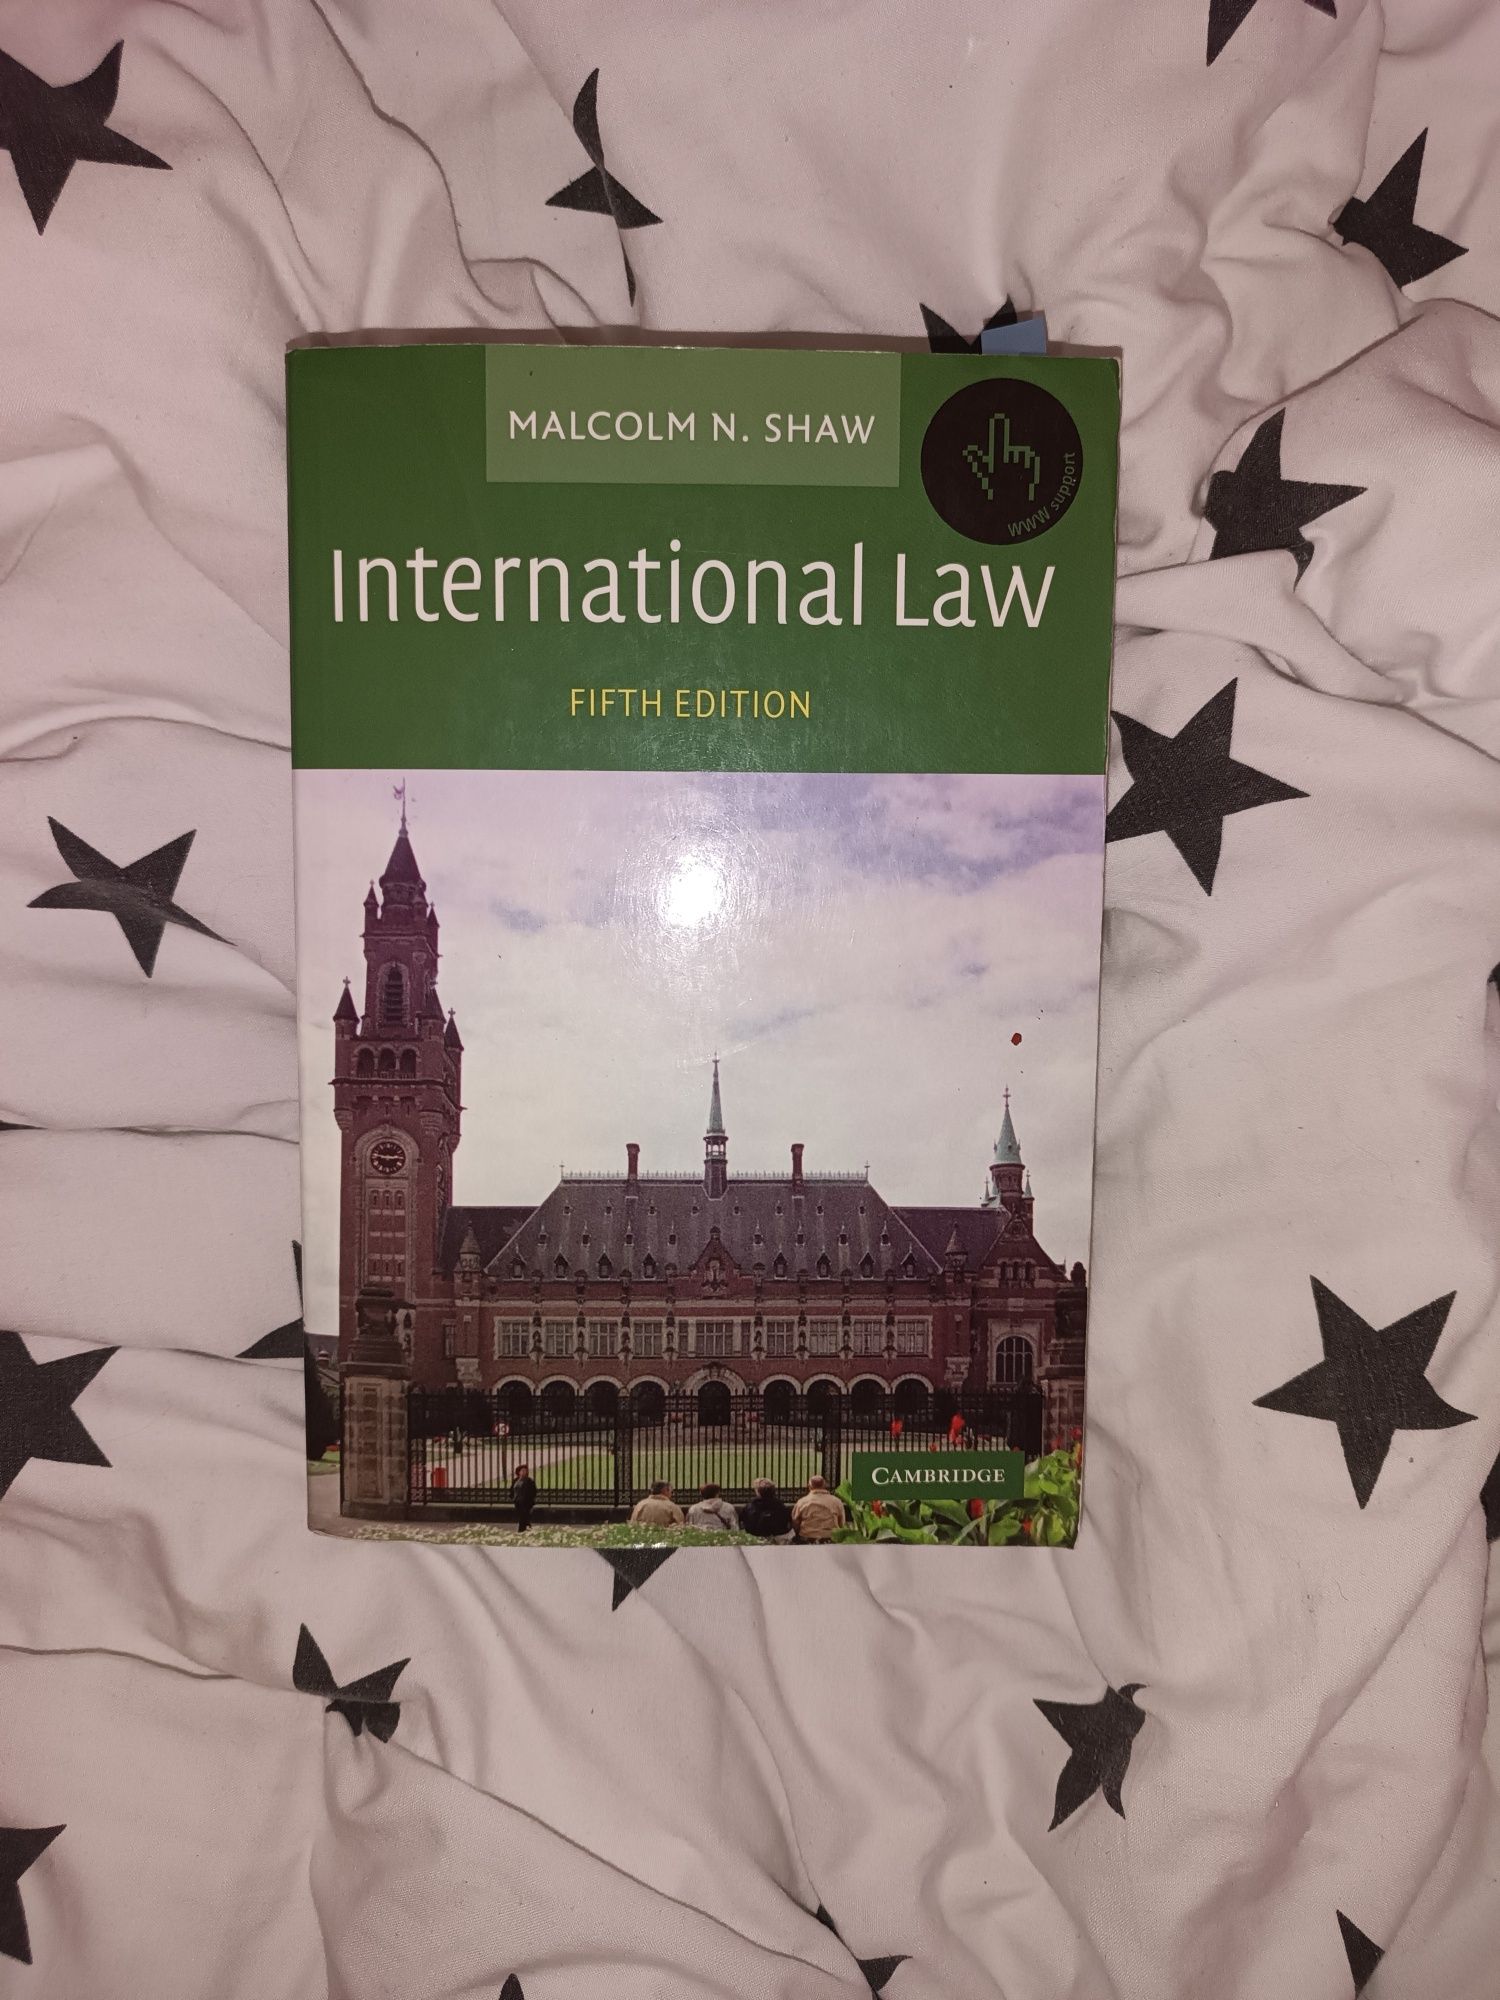 International law first edition Malcolm N. Shaw книга англійською